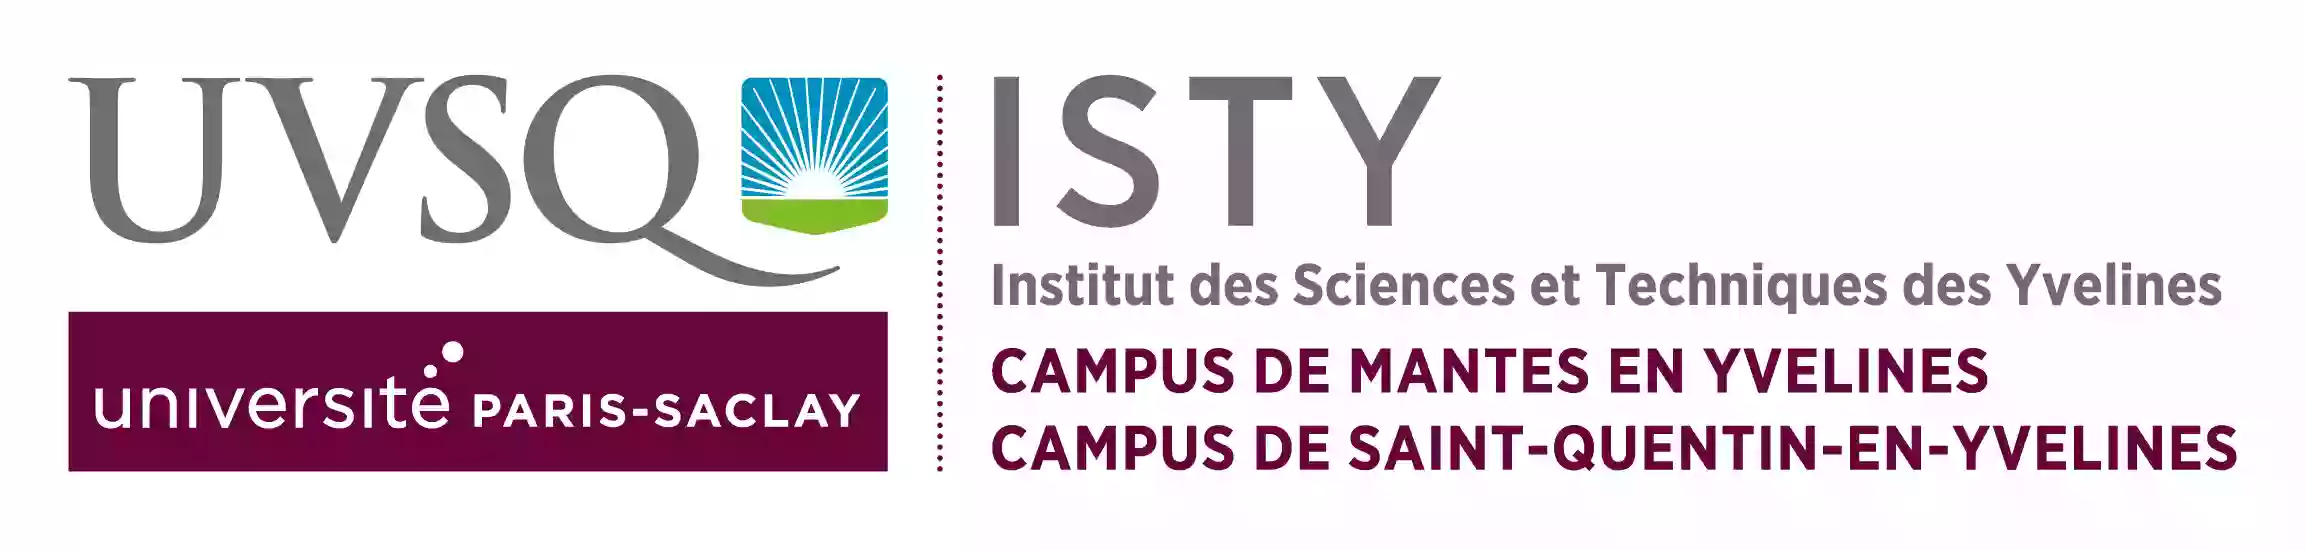 Institut des Sciences et Techniques des Yvelines - ISTY